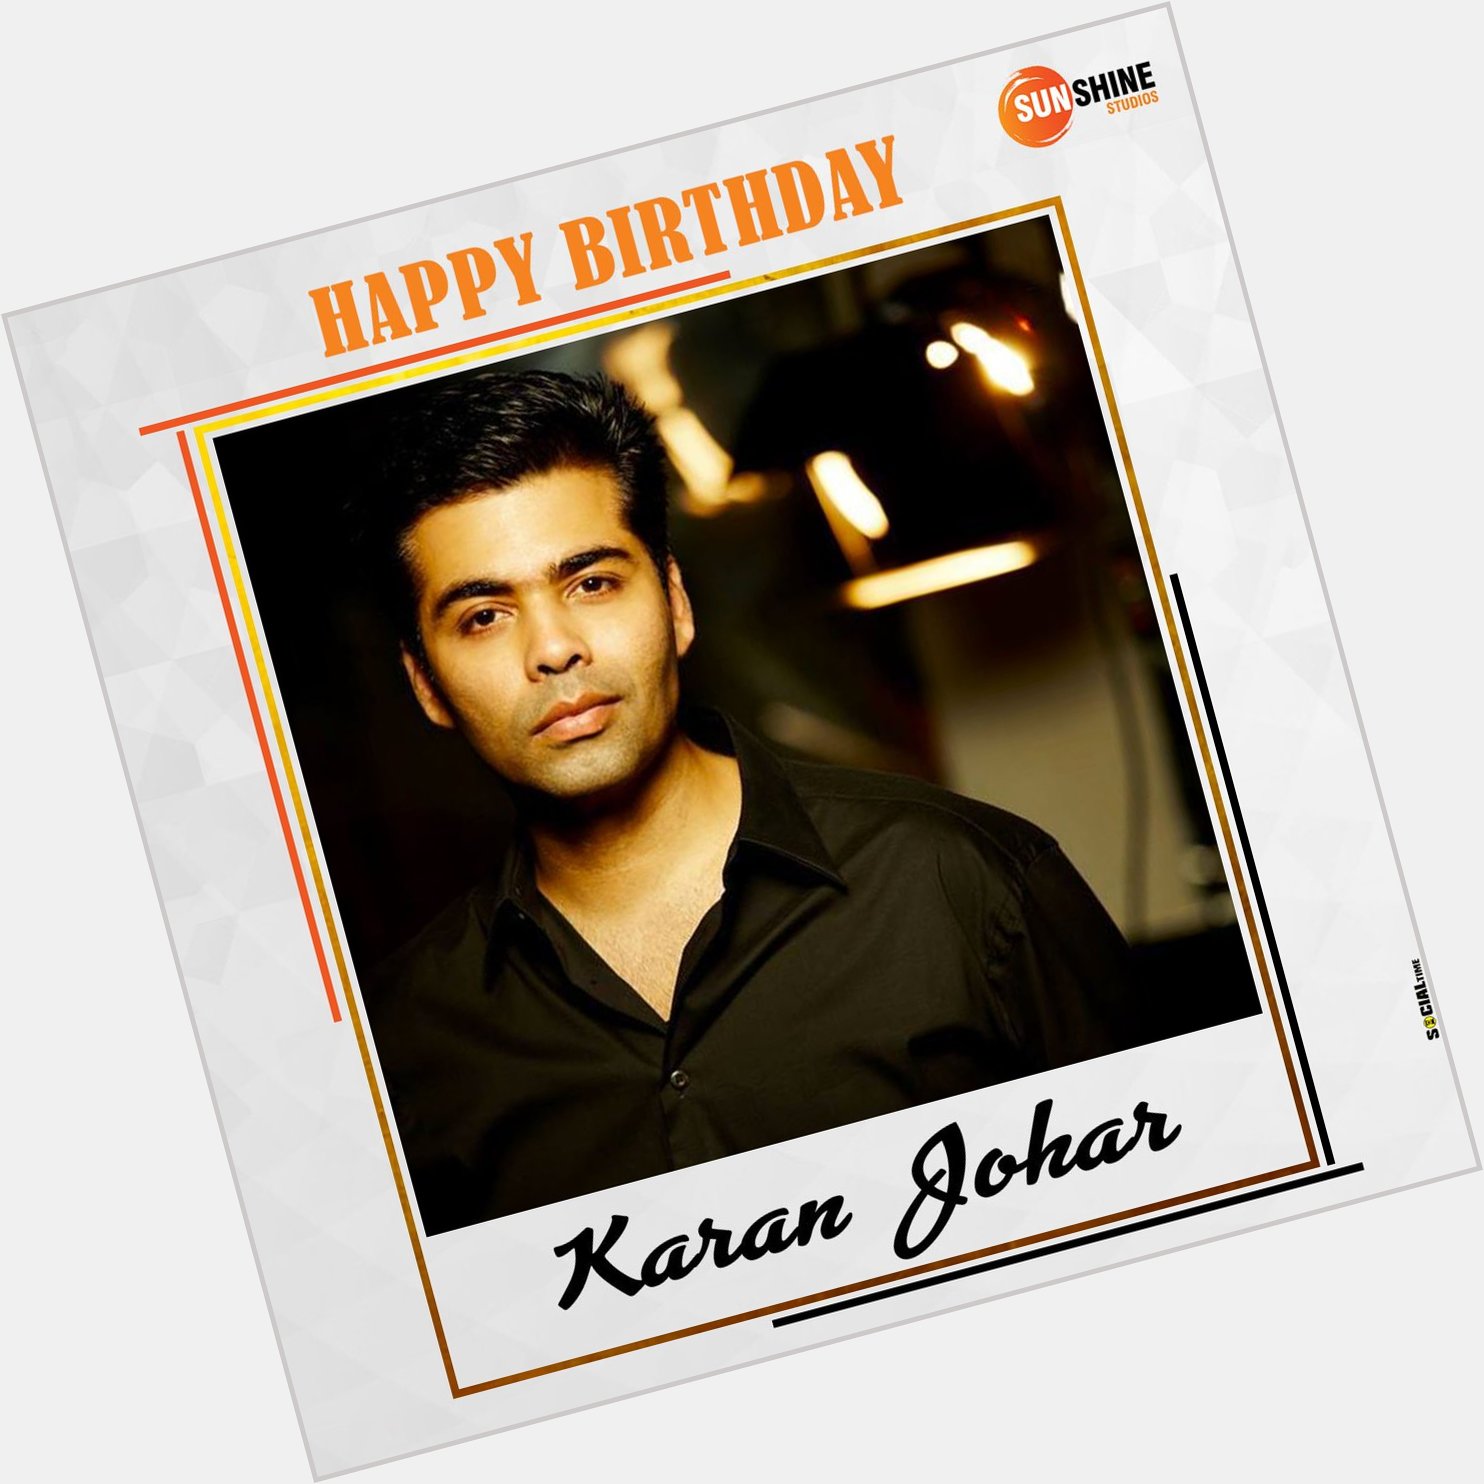 Happy Birthday to Karan Johar!     